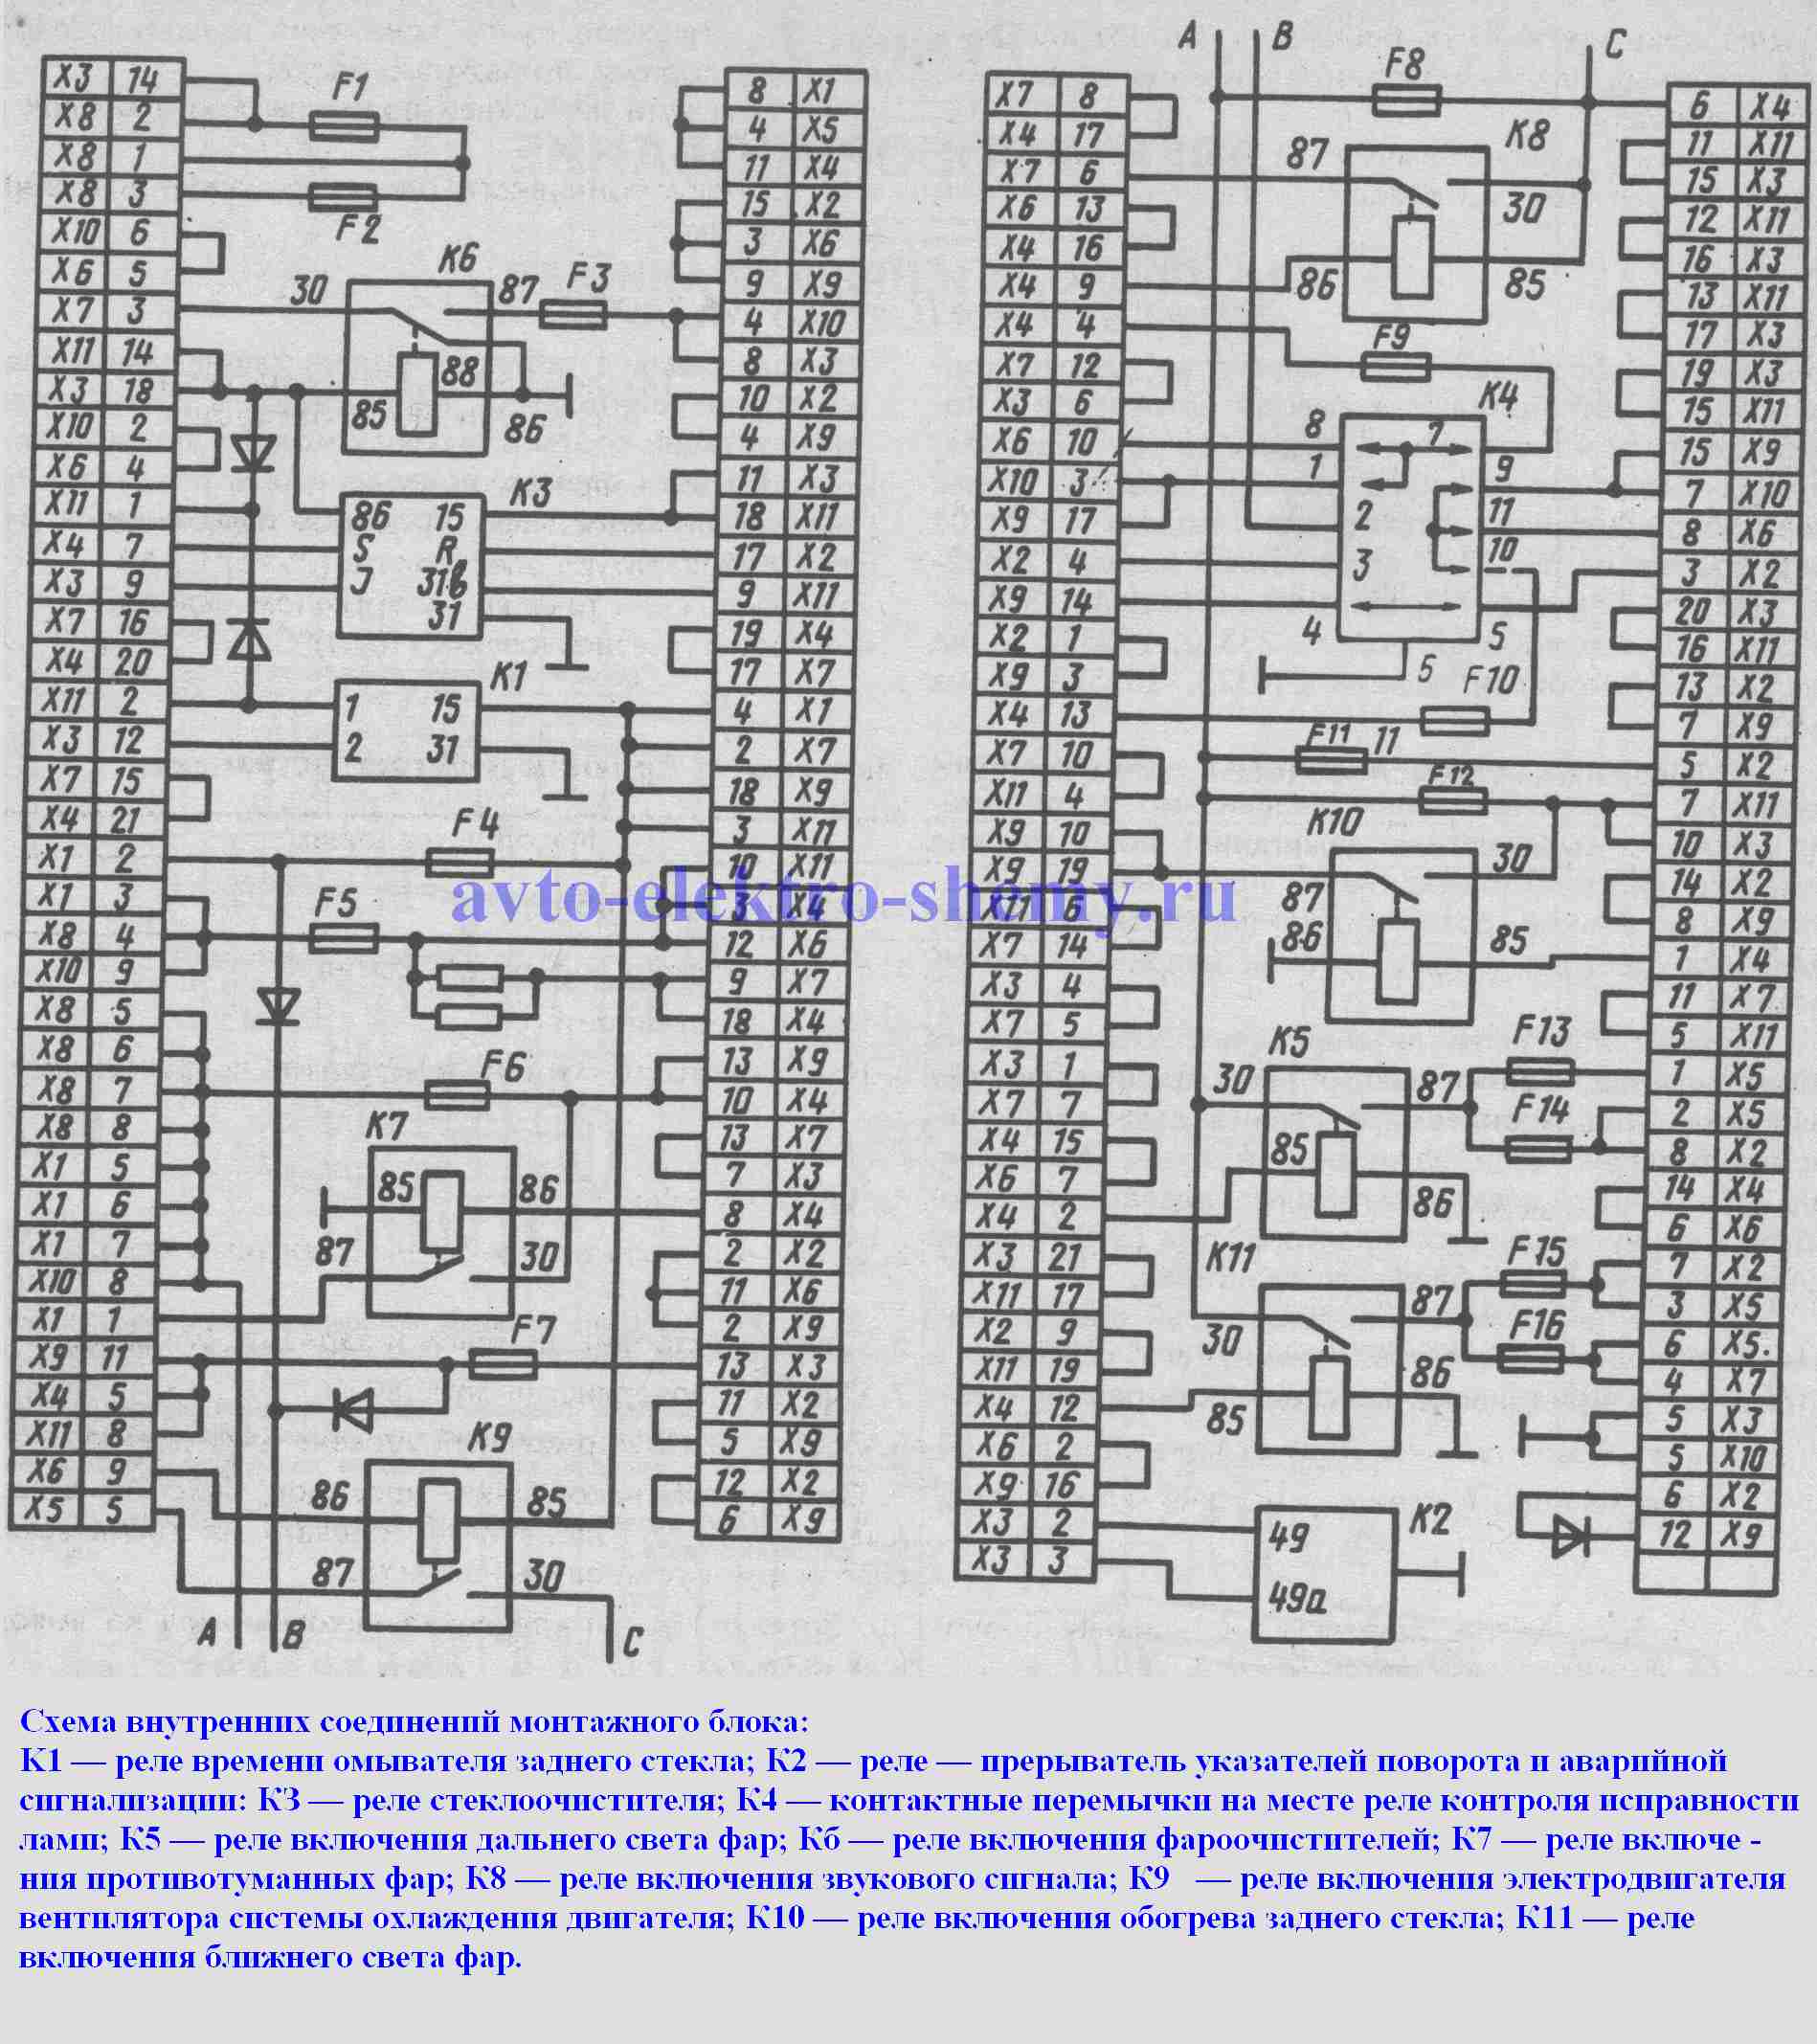 Схема внутренних соединений монтажного блока - Москвич АЗЛК